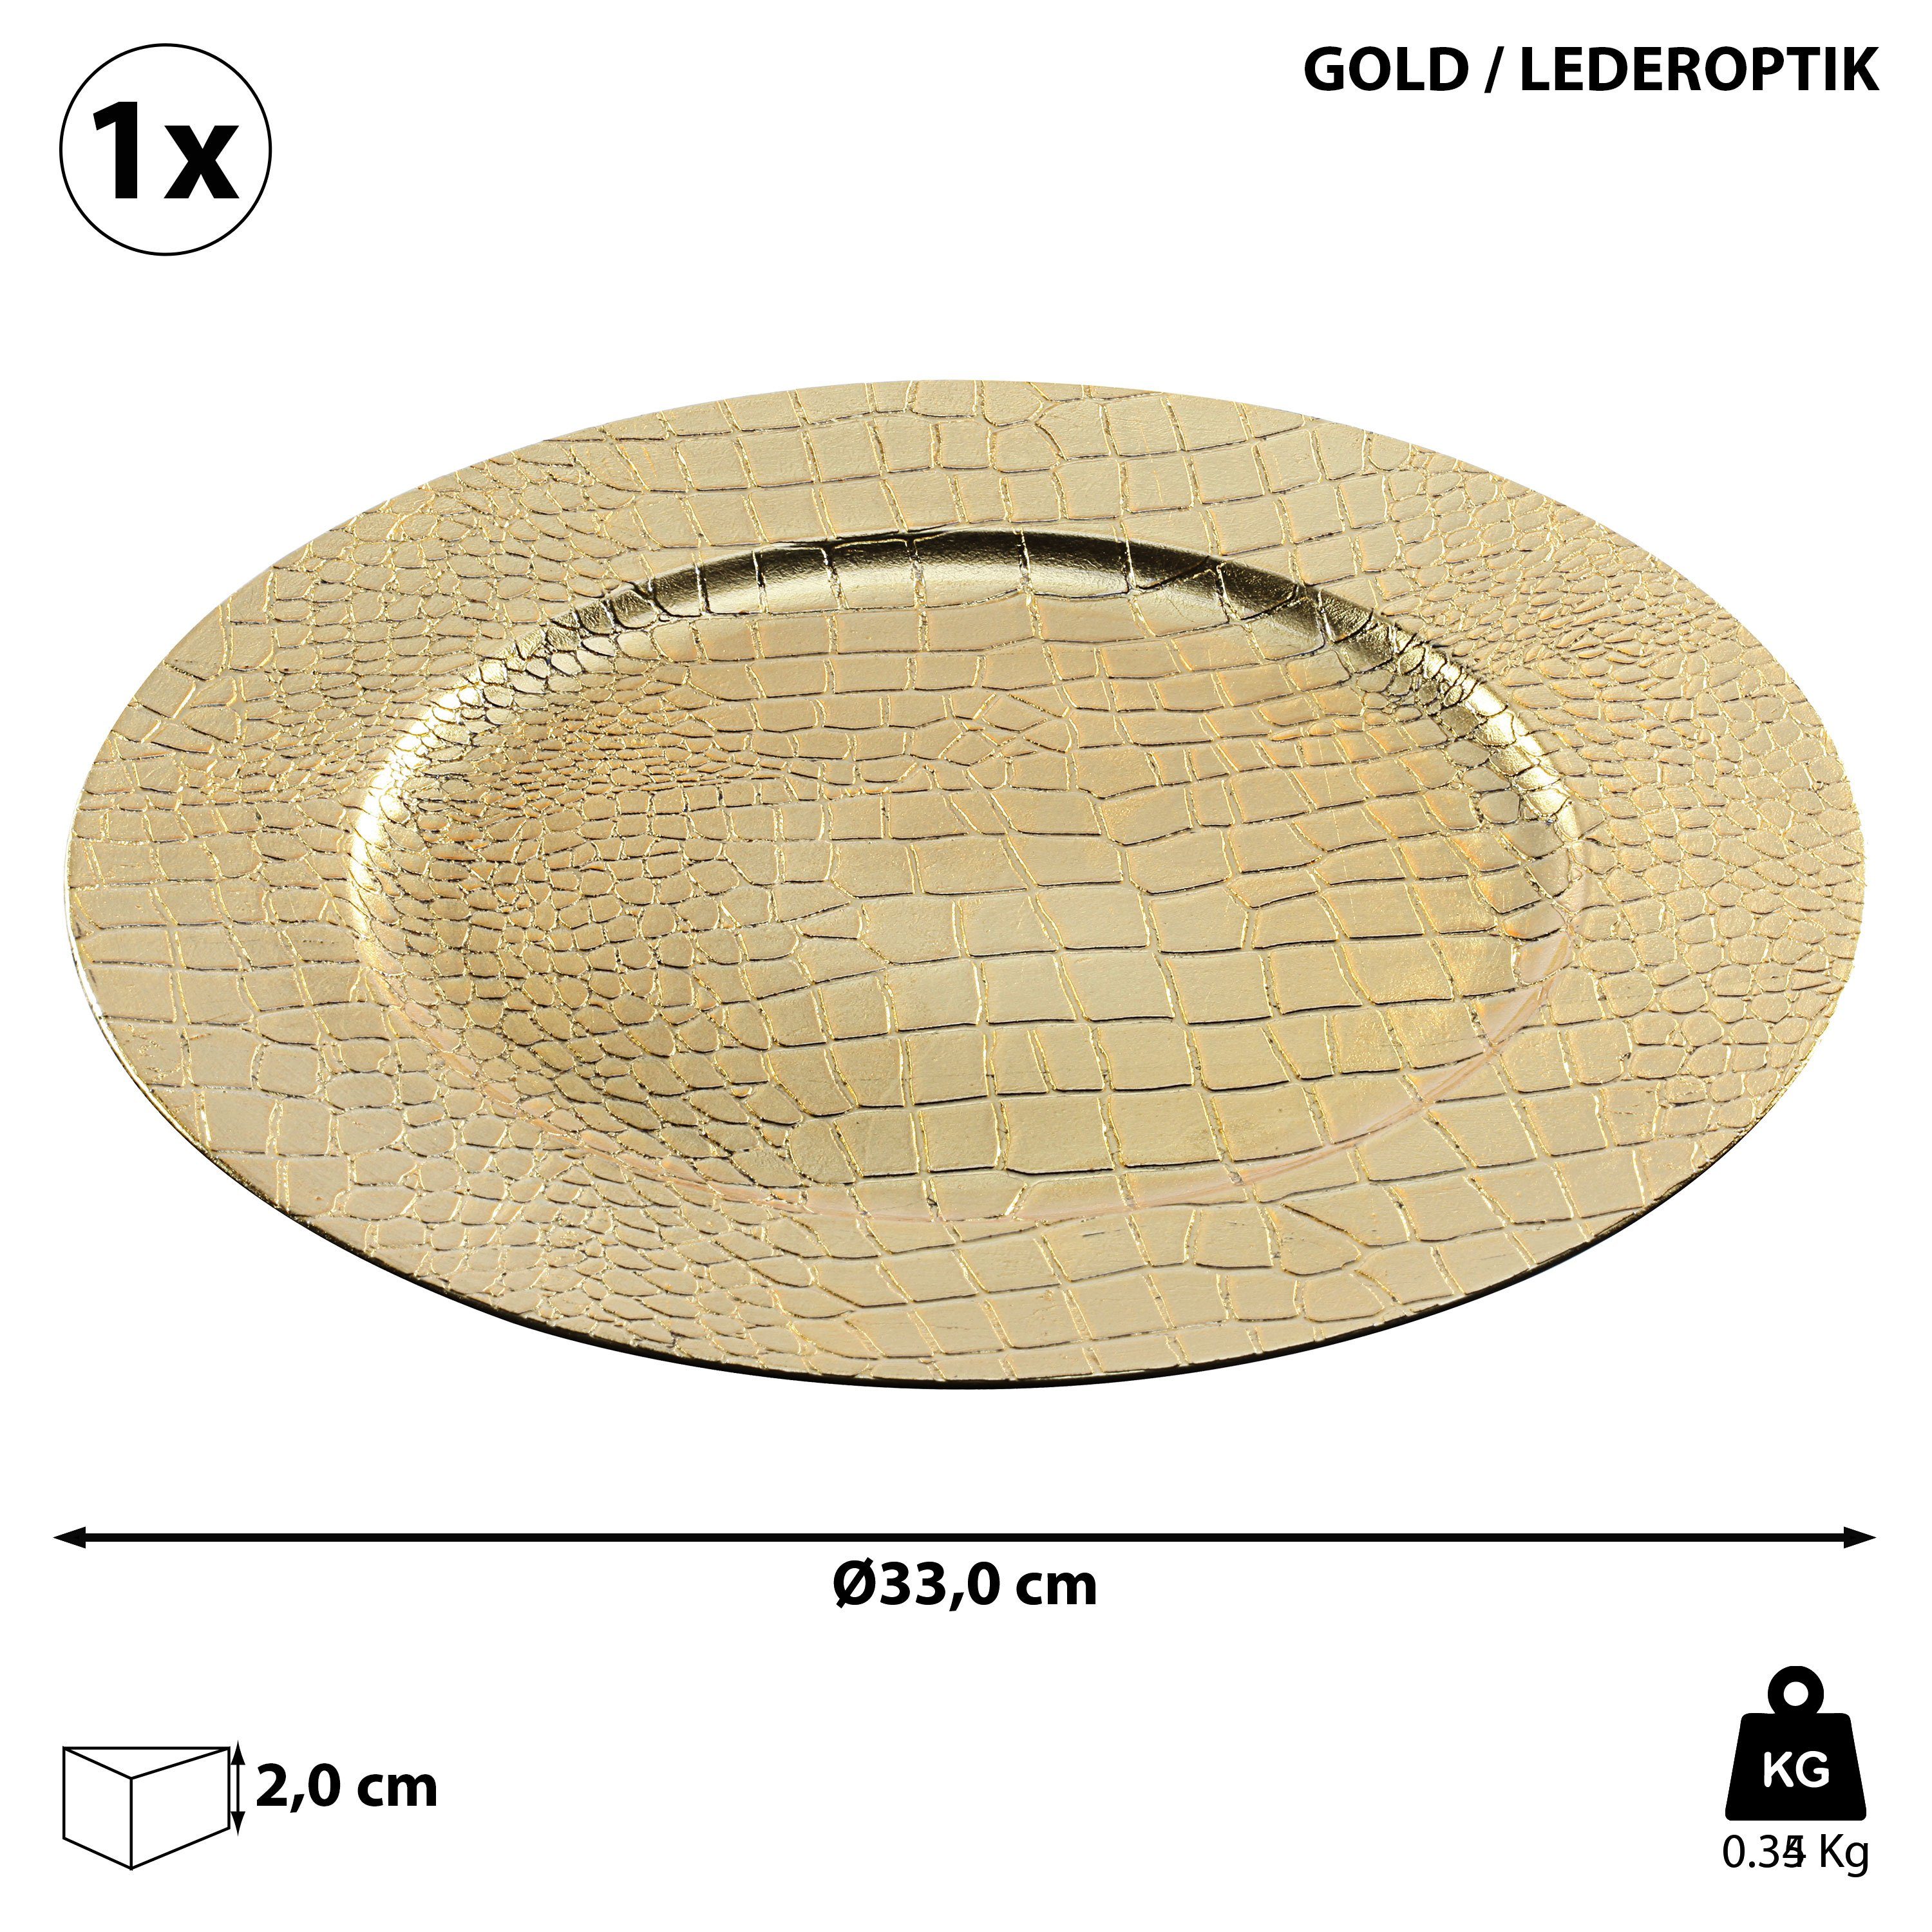 CEPEWA Dekoteller Dekoteller Tablett 33cm Ø 1x Platzteller Lederoptik Lederoptik gold gold PVC Teller 33cm 'Leather'